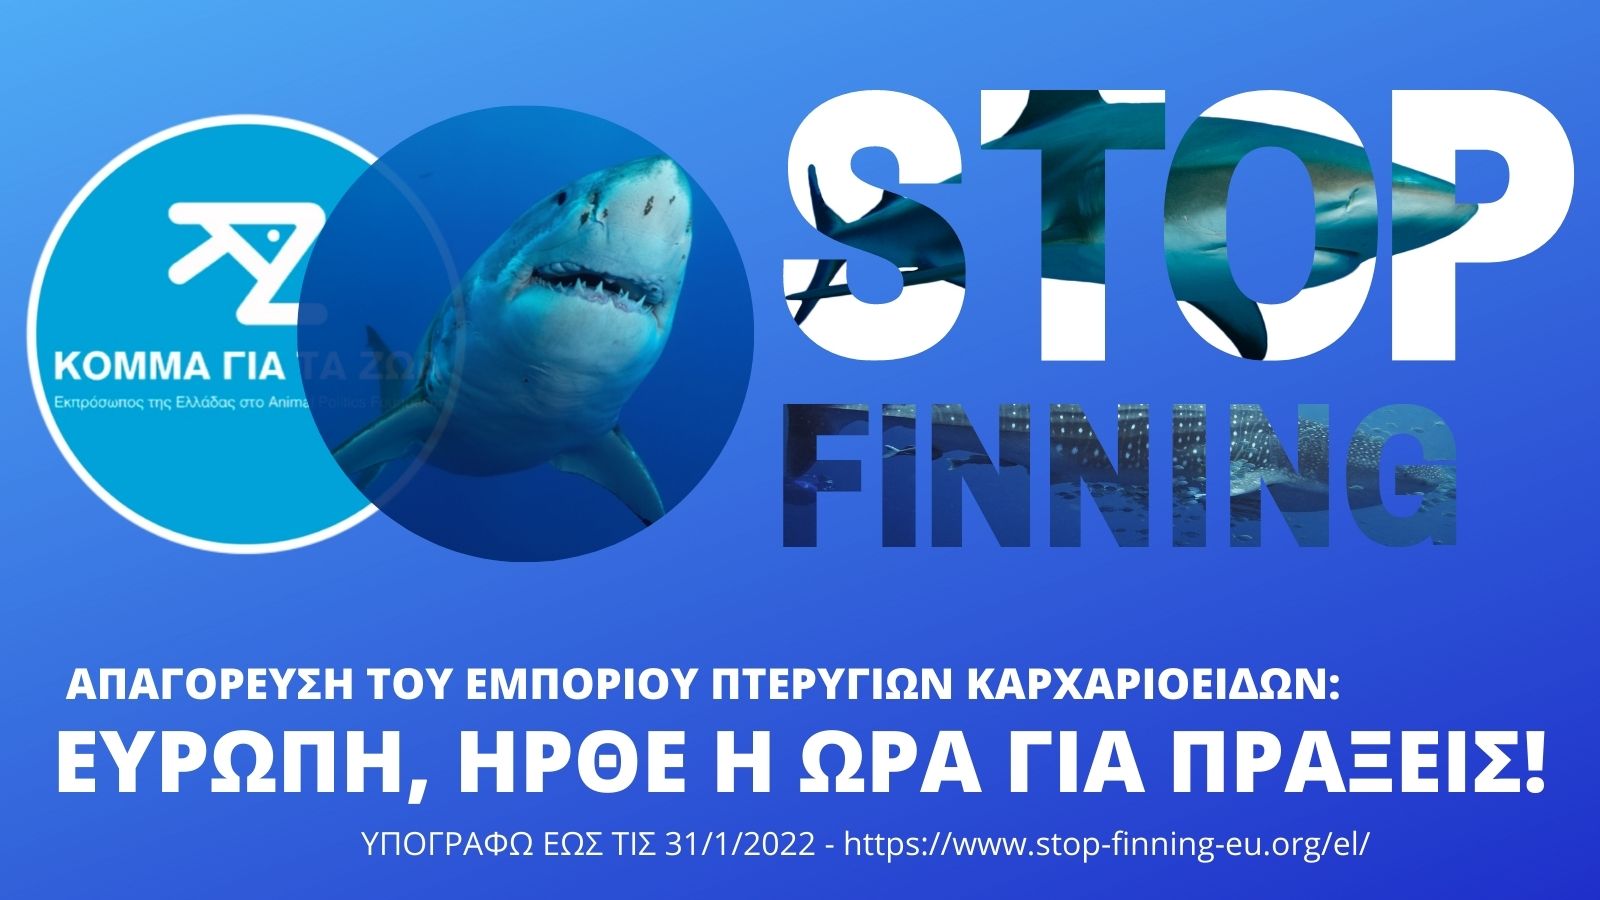 Απαγόρευση του εμπορίου πτερύγιων καρχαρία στην ΕΕ: δέκα ημέρες έμειναν για την υπογραφή σας